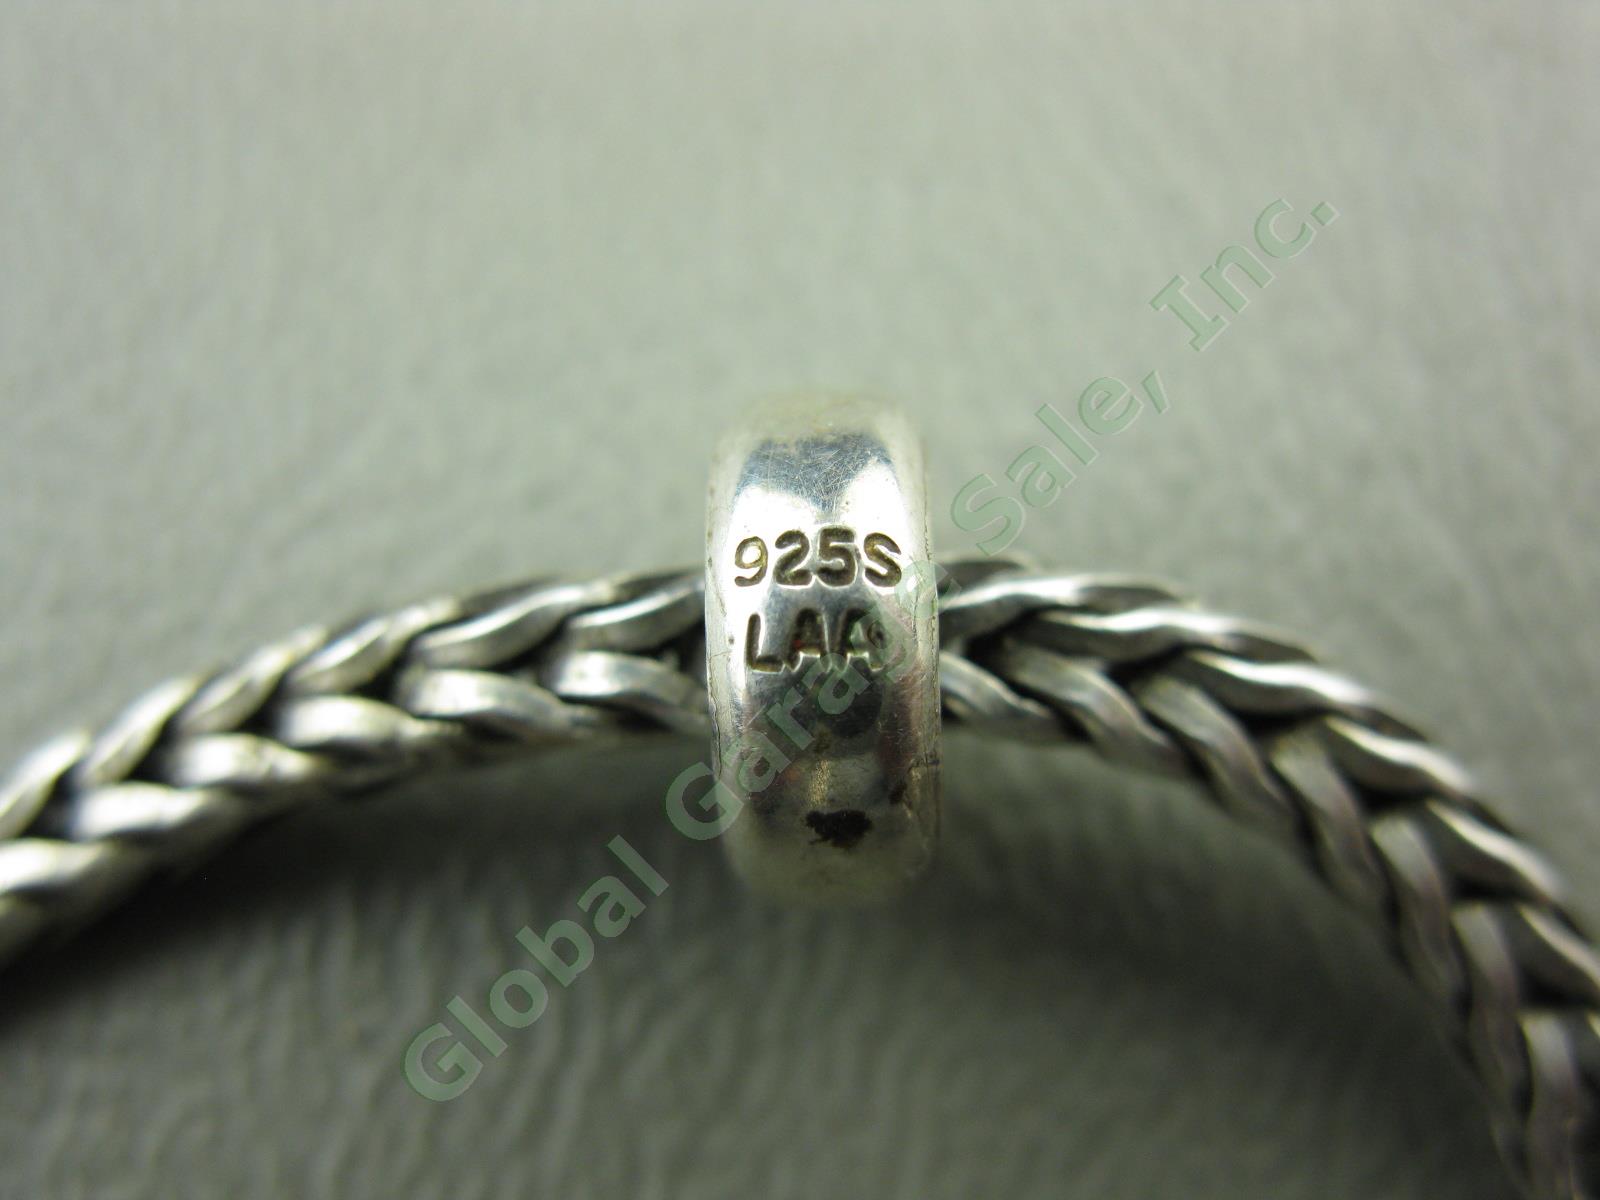 Trollbeads LAA 925 S Sterling Silver Bracelet Swan Lock Chamilia Charm Beads Lot 3